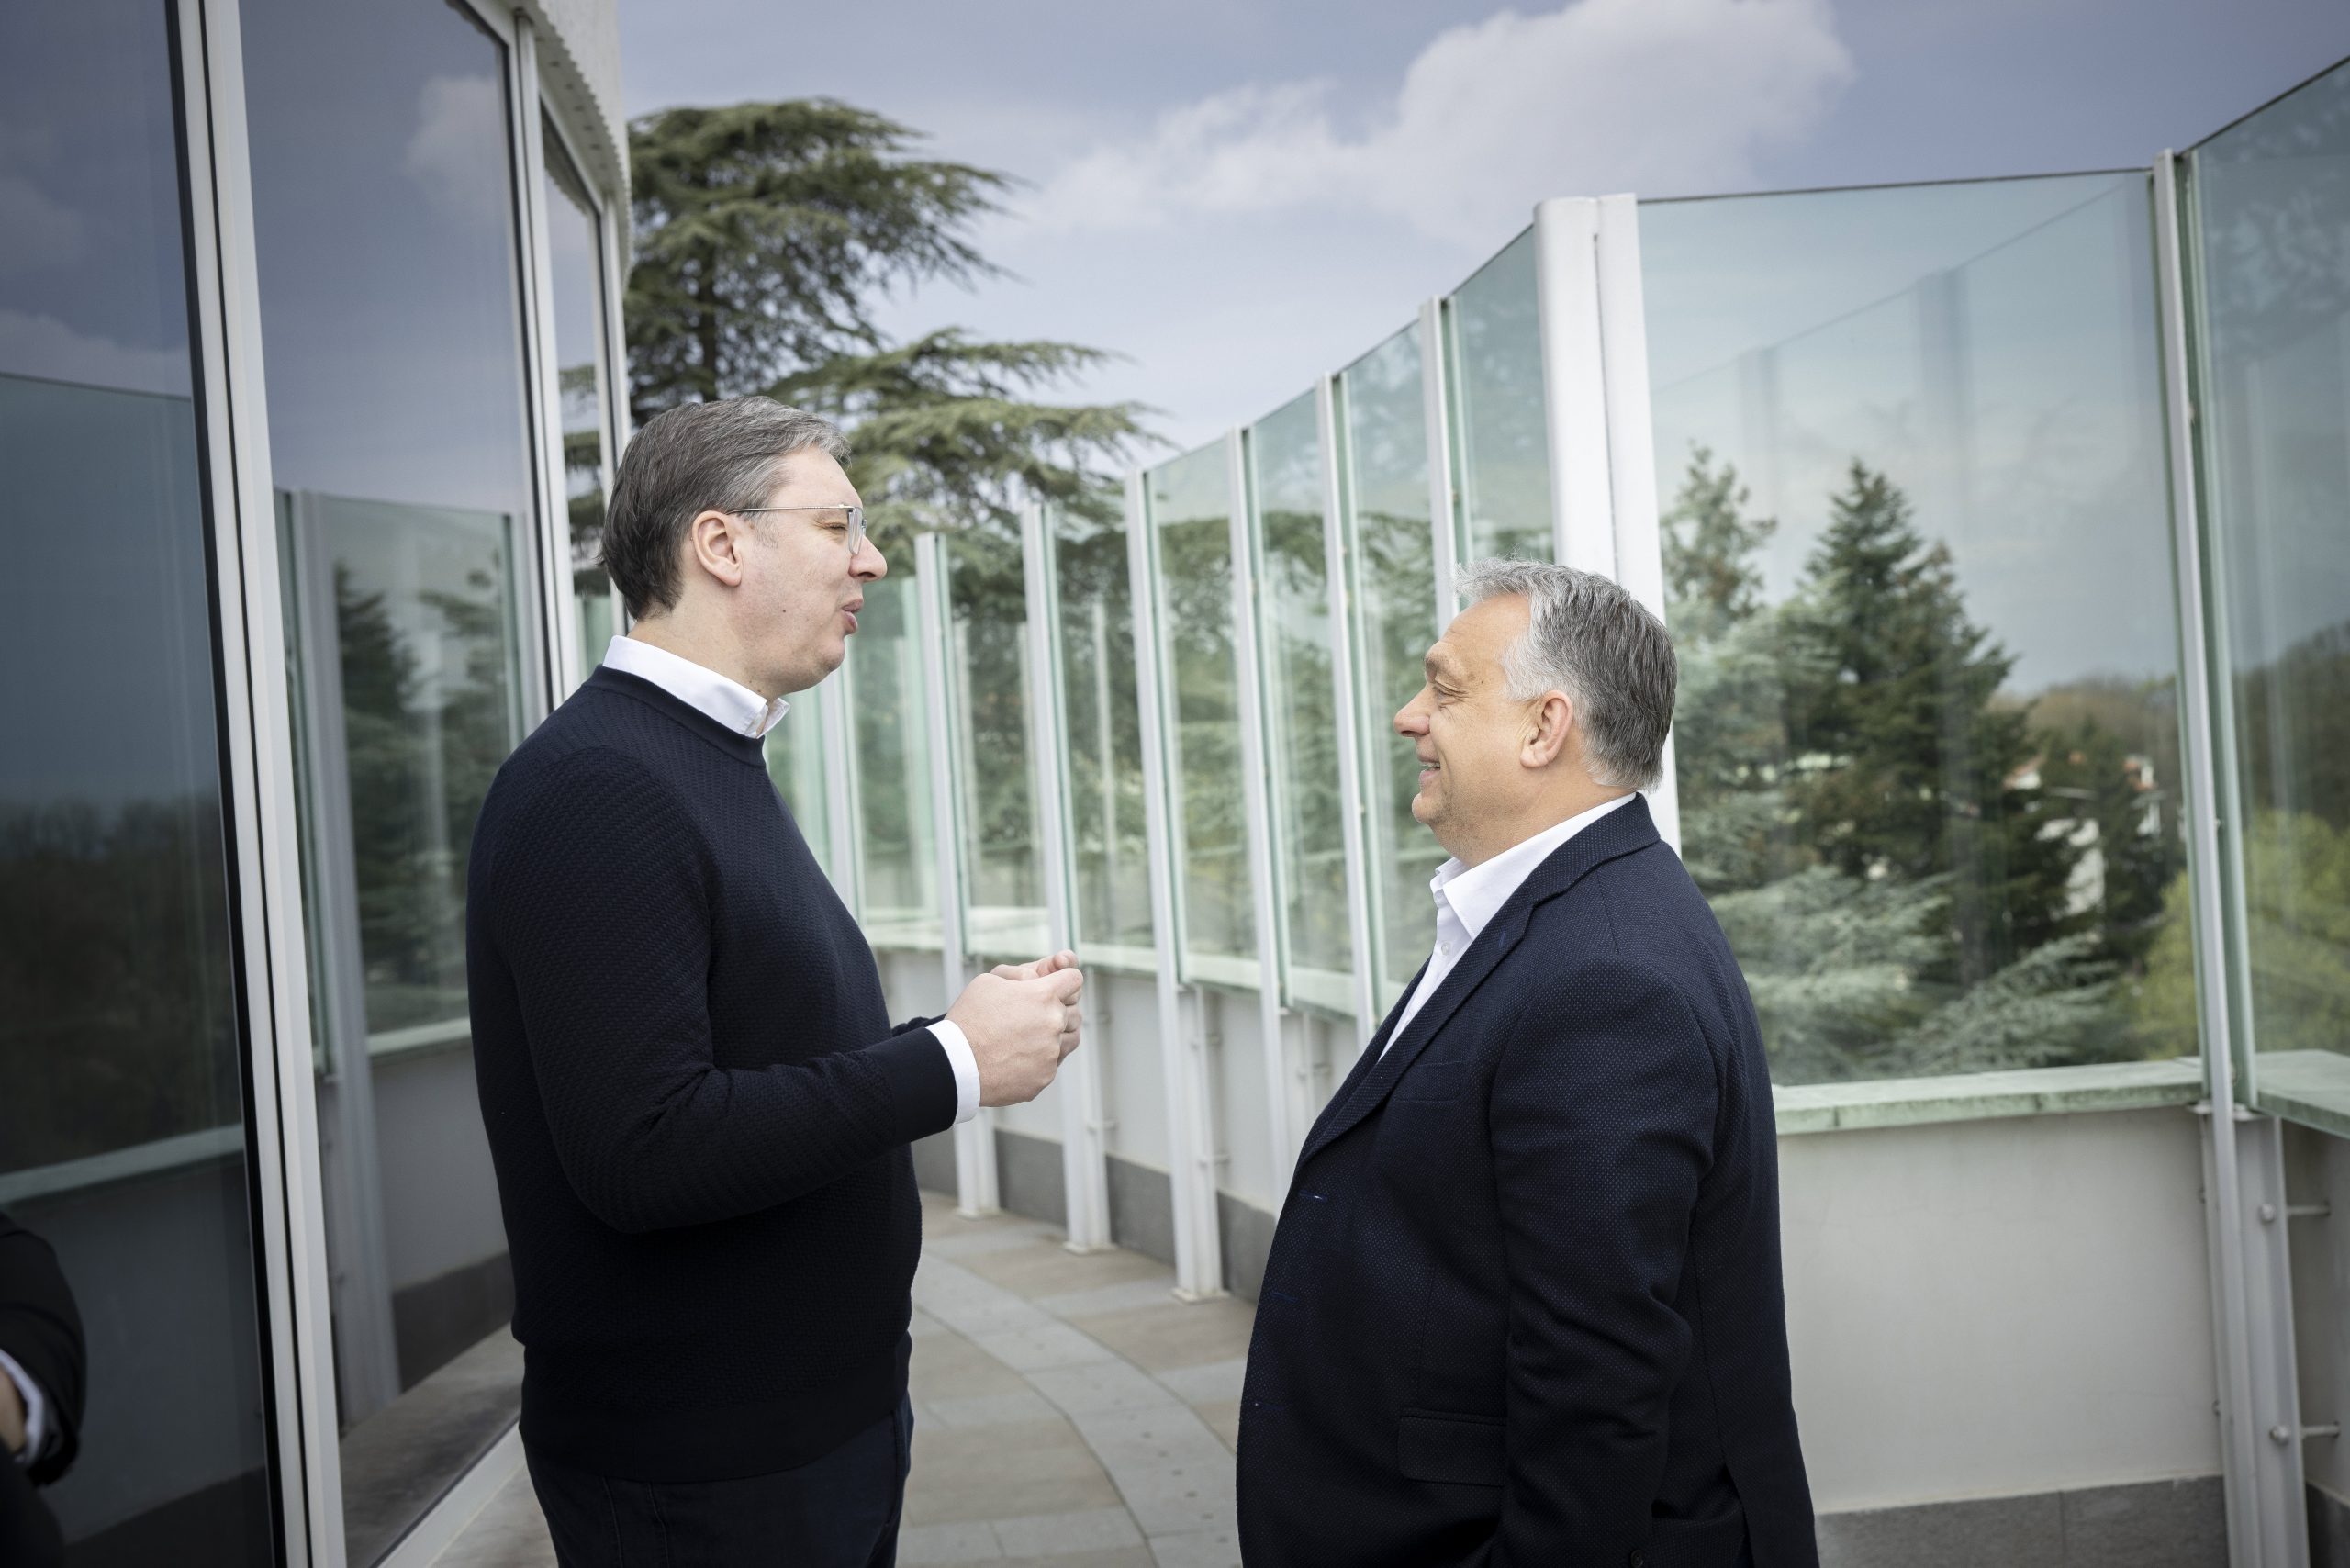 Viktor Orbán Meets Serbian President Aleksandar Vucic